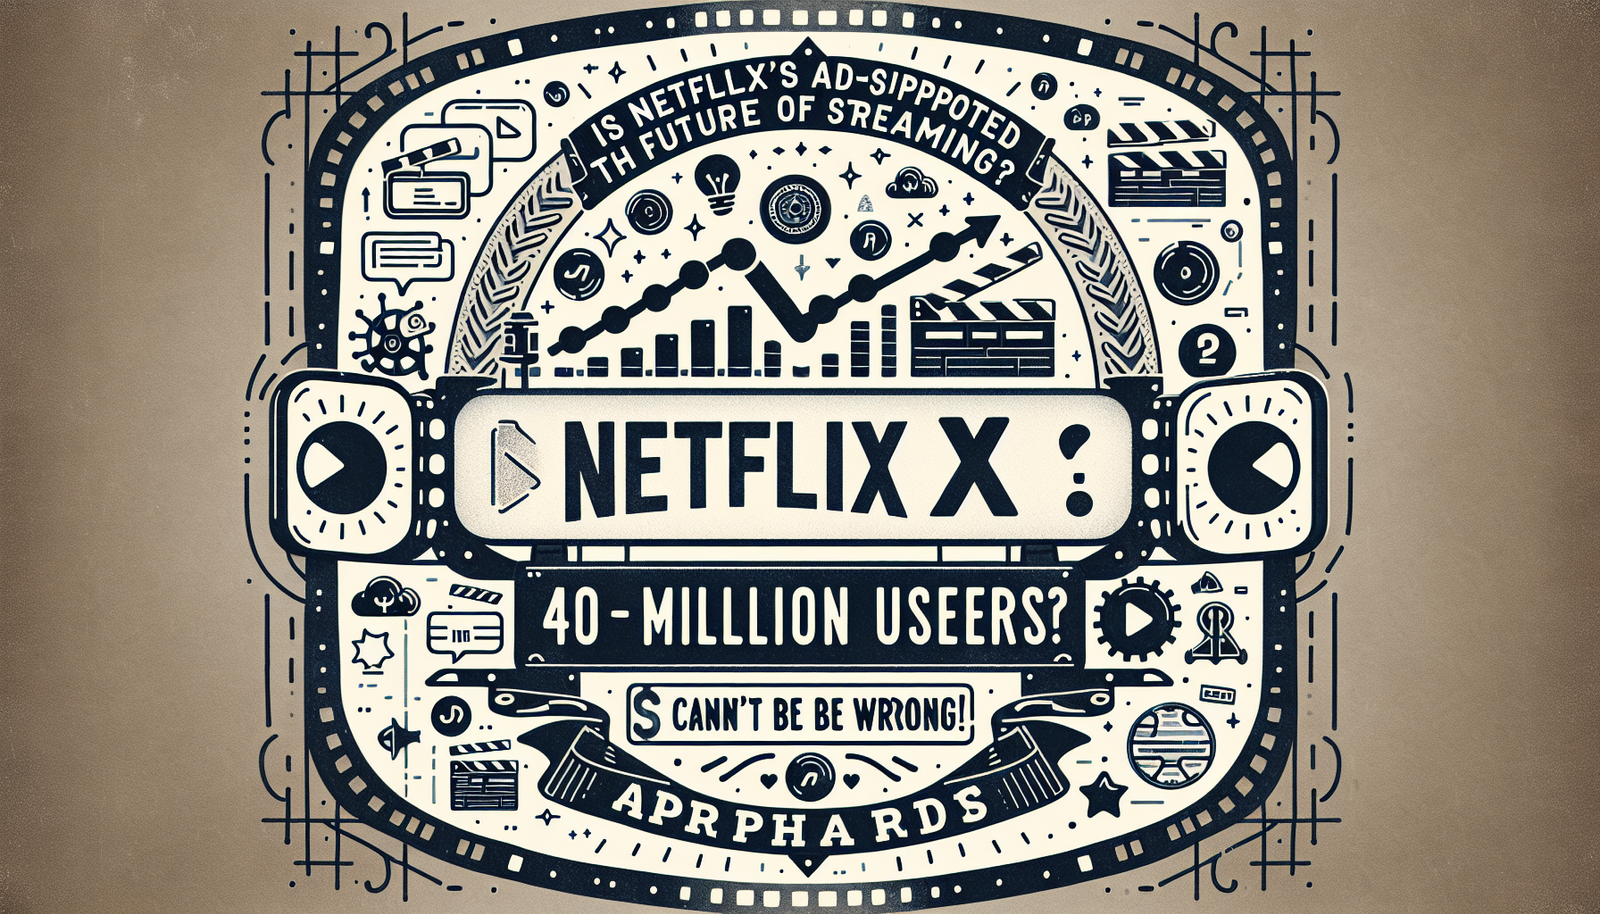 scopri il potenziale livello di supporto pubblicitario di Netflix e il suo impatto sul futuro dello streaming. scopri perché 40 milioni di utenti stanno adottando questo nuovo modello.